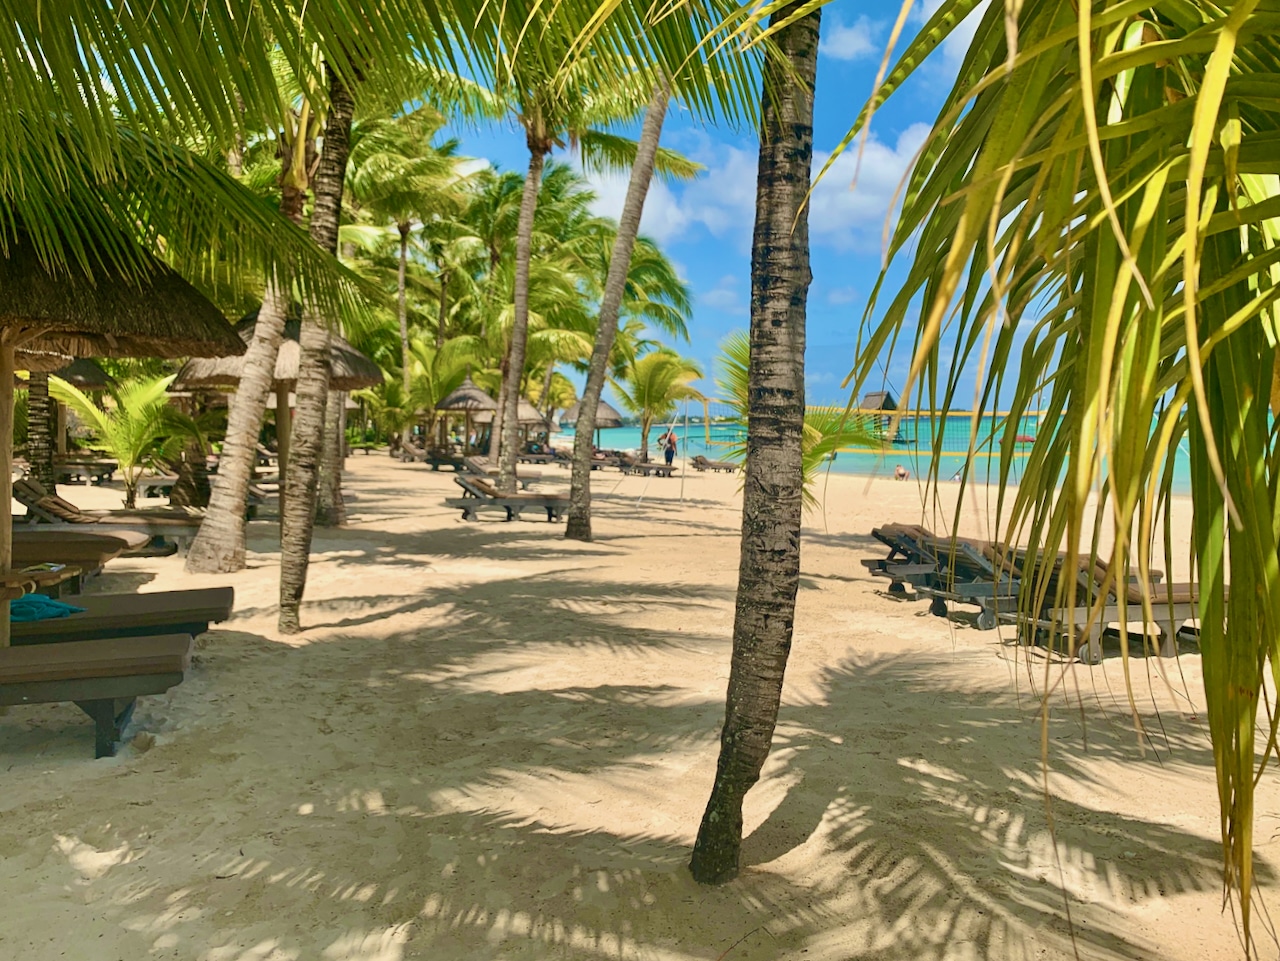 La mia prima esperienza alle Mauritius - benvenuti in paradiso Mauritius è il sogno di una giornata estiva tropicale - benvenuti in paradiso. Foto: Sascha Tegtmeyer